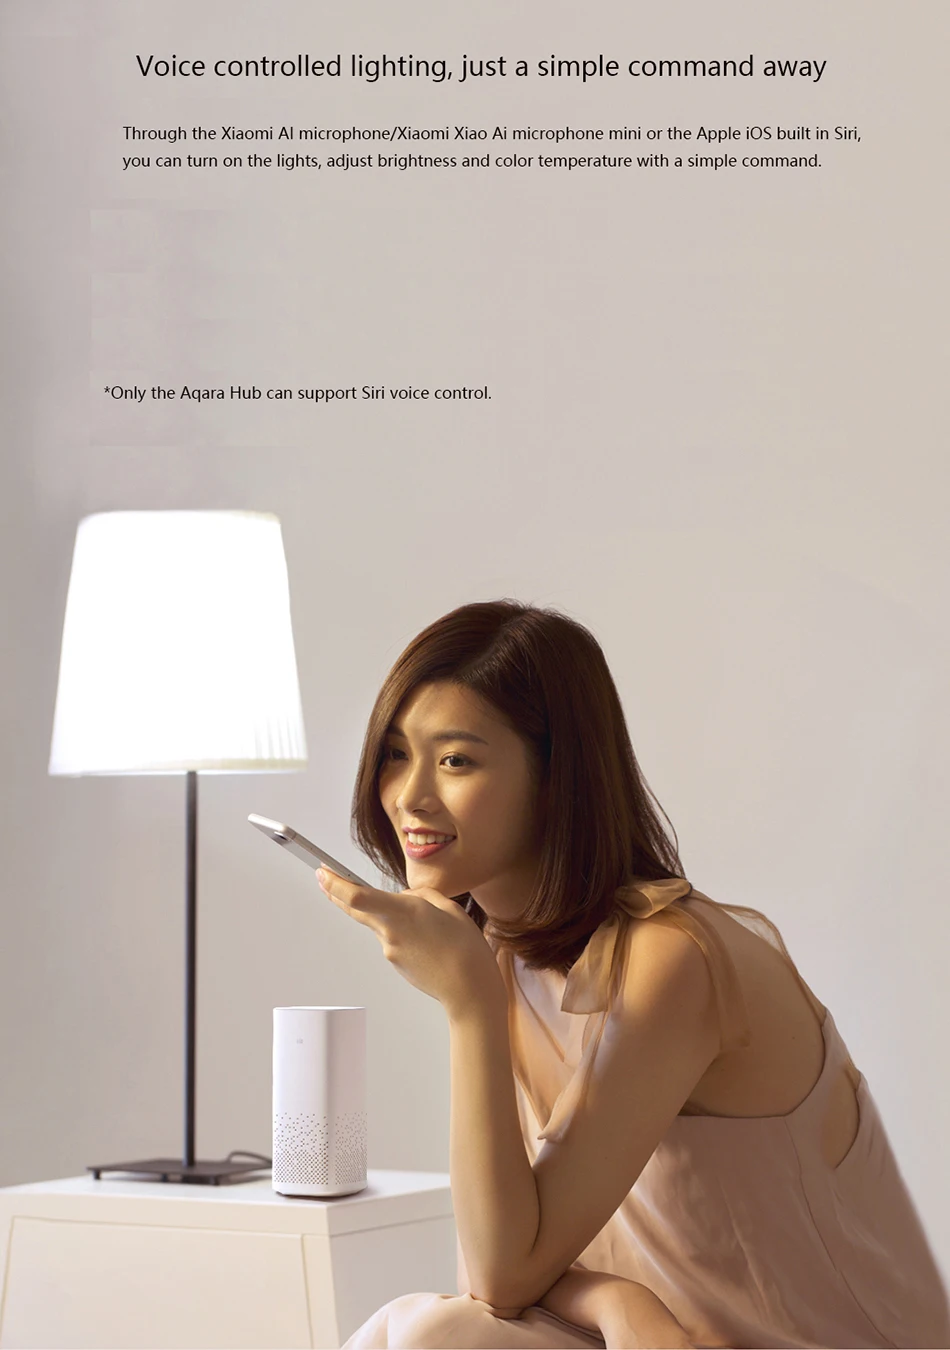 Aqara умная лампа, умная лампа mi home APP, пульт дистанционного управления, яркость 9 Вт, белый цвет, светодиодный светильник Zigbee для xiaomi Smart home